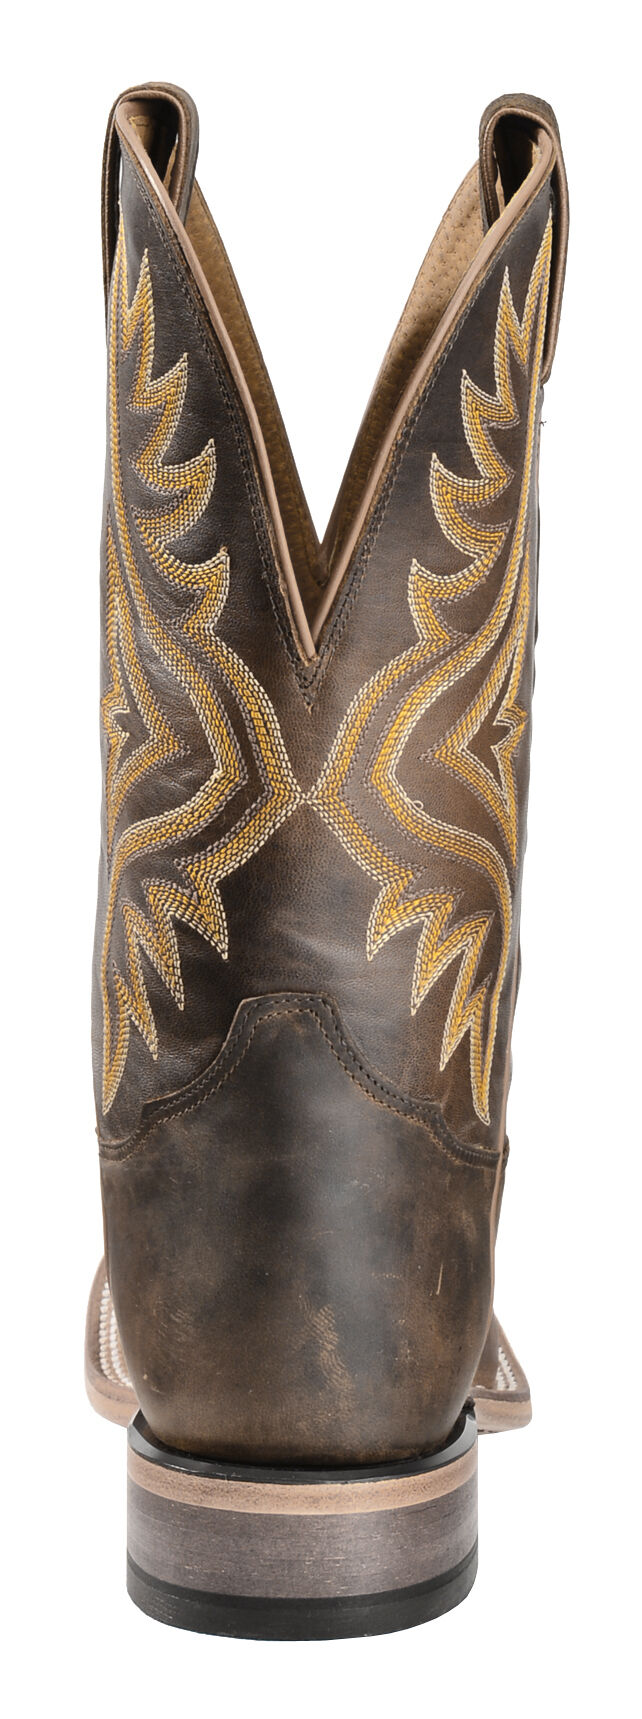 tony lama americana western boots